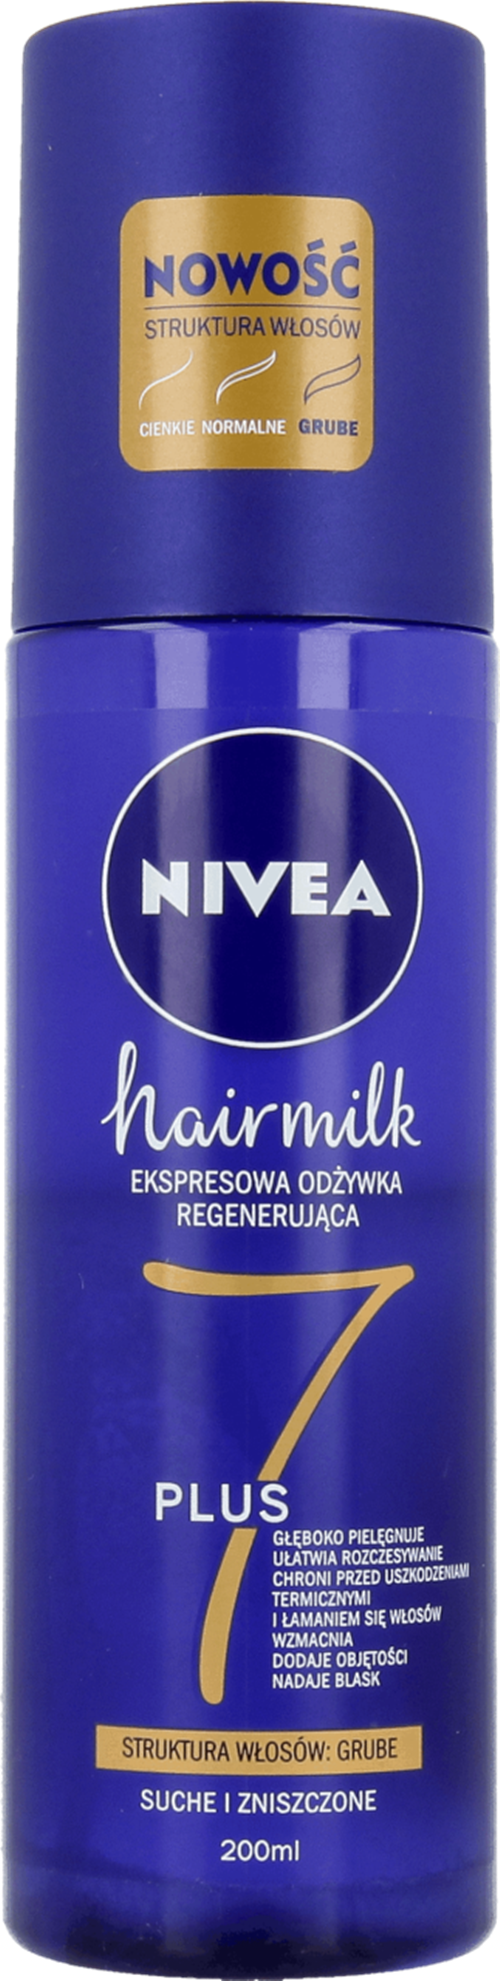 niveahairmilk odżywka do włosów o strukturze grubej wizaz